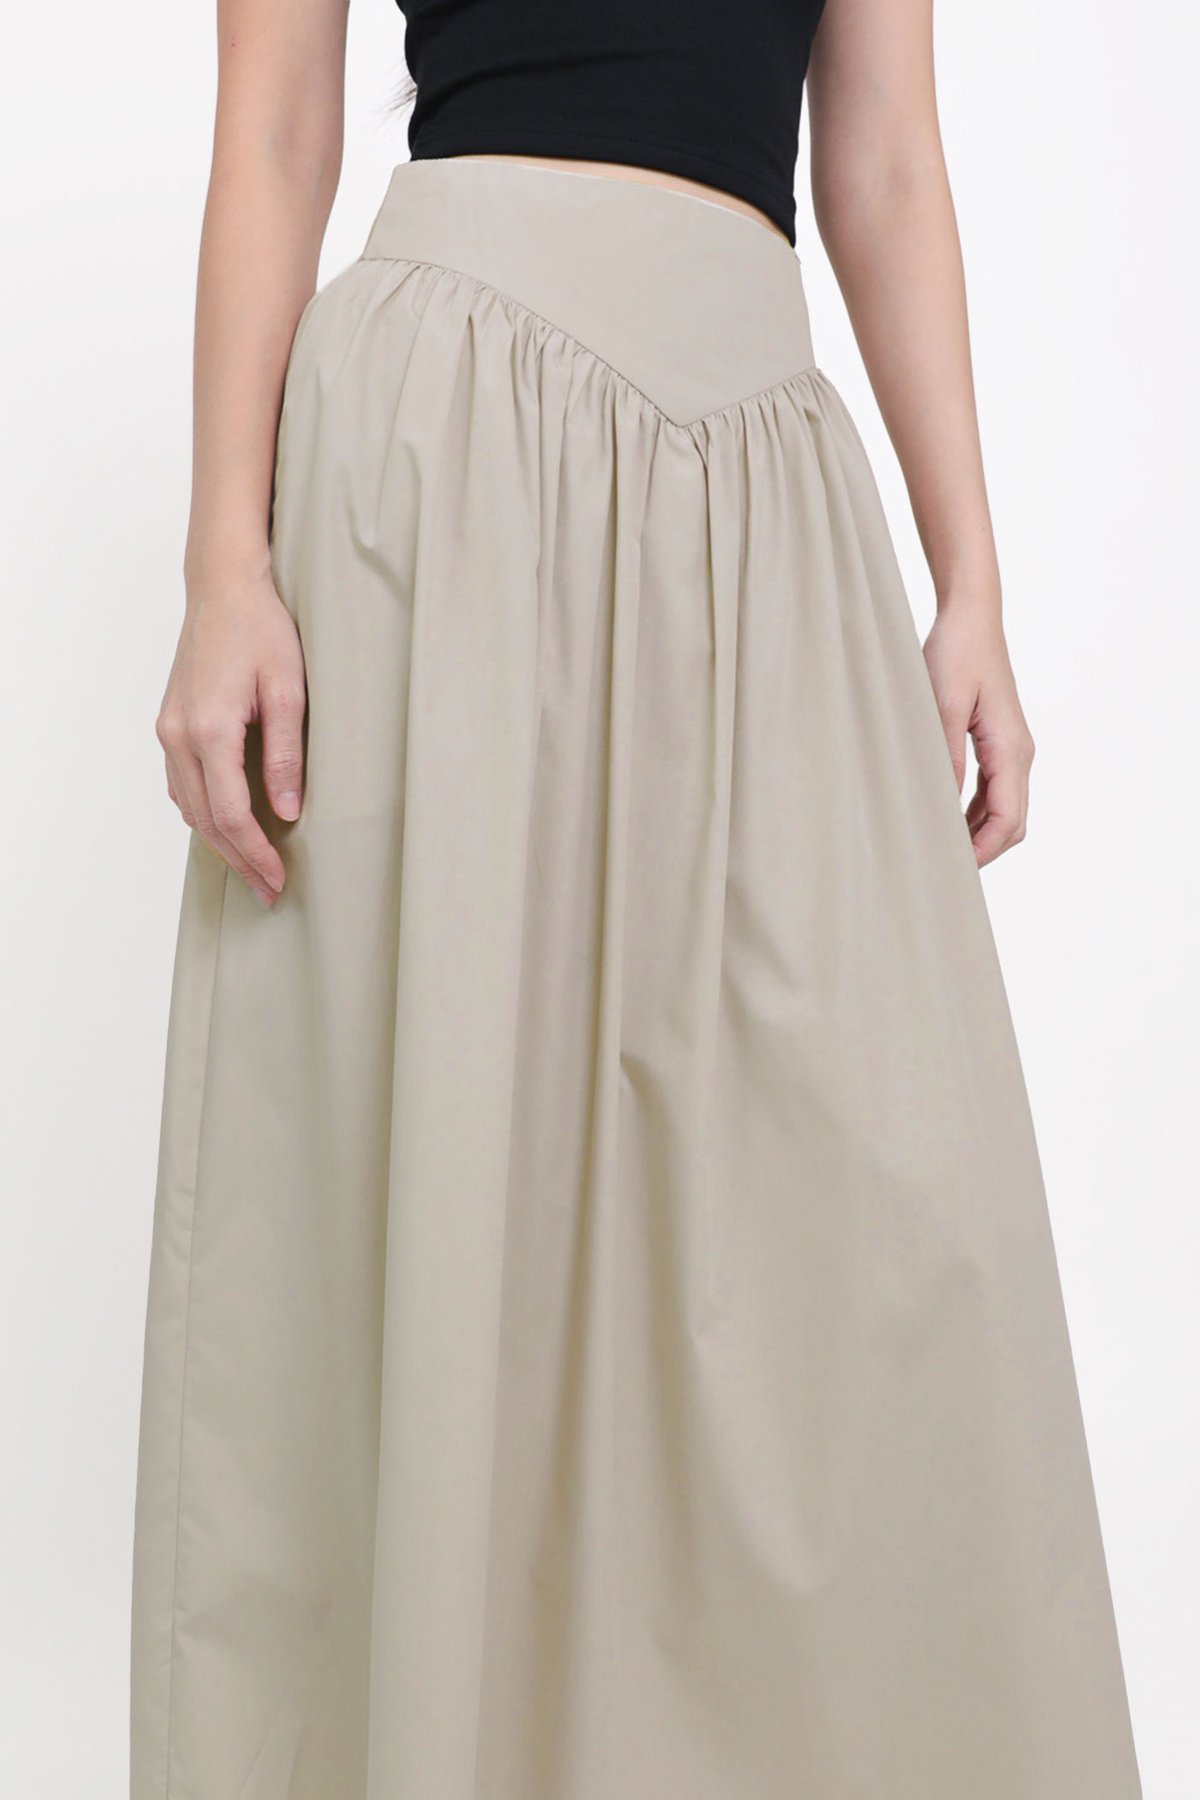 Jayna Corset Maxi Skirt (Light Taupe)